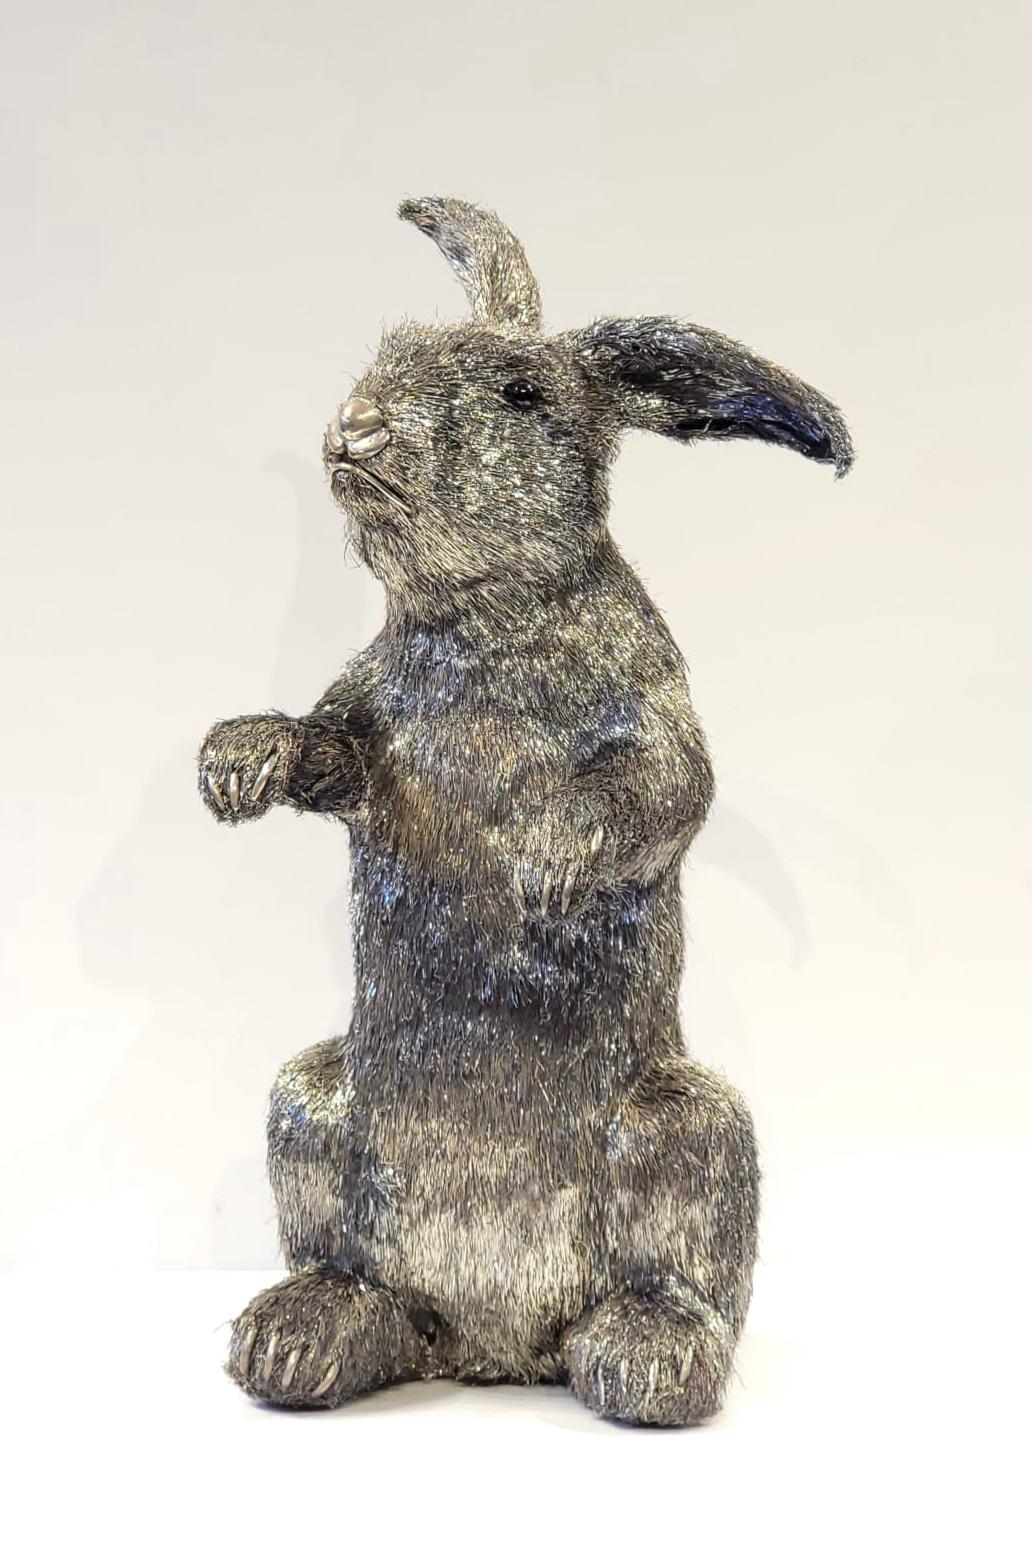 Lapin en argent grandeur nature de Mario Buccellati. Un lapin en argent grandeur nature, fabriqué selon une technique connue sous le nom de 